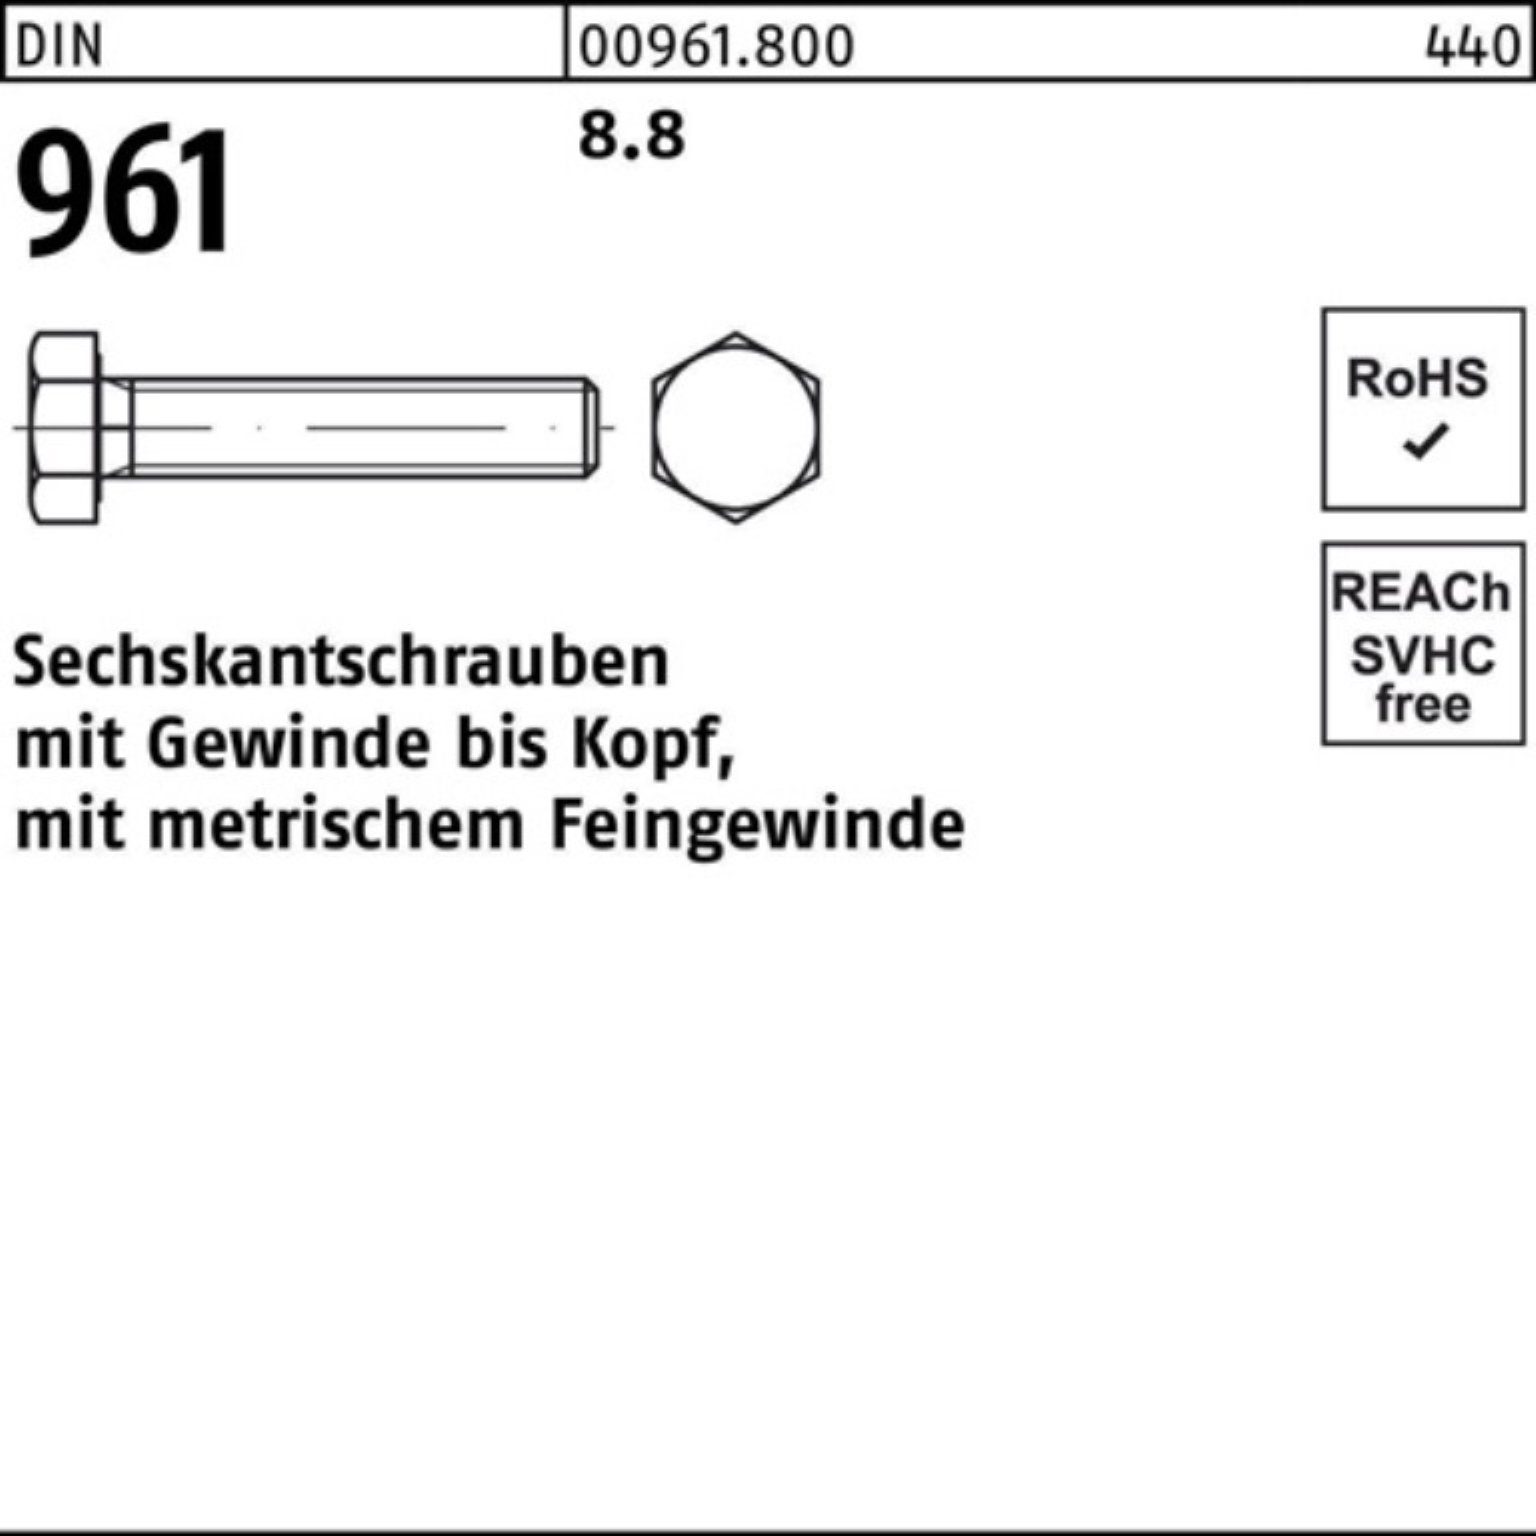 Reyher Sechskantschraube 100er Pack Sechskantschraube VG Stück 961 DIN 50 M12x1,5x110 DIN 8.8